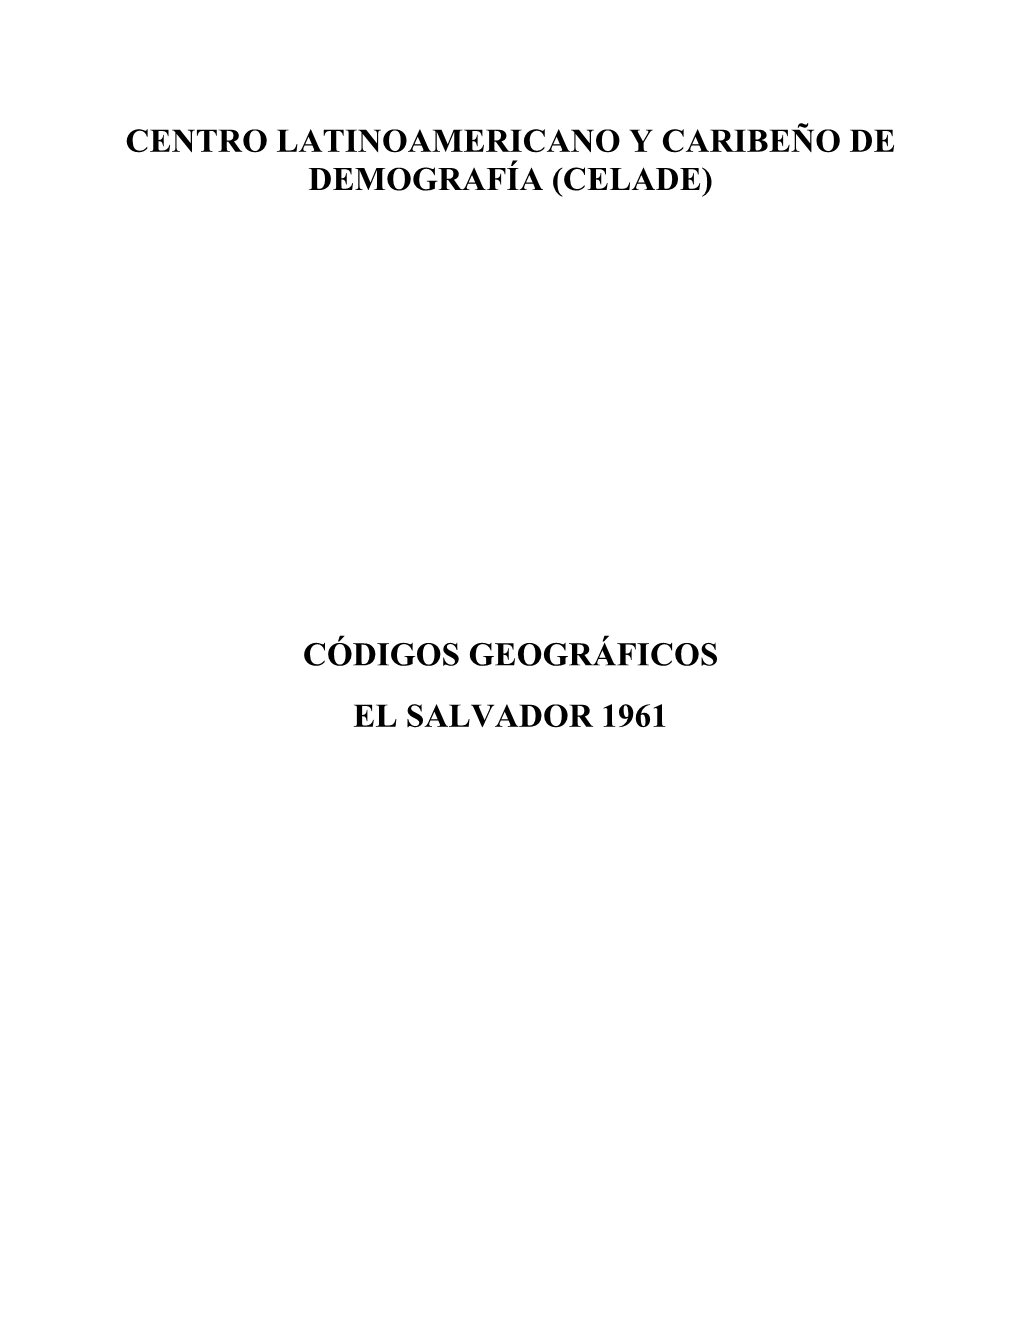 (Celade) Códigos Geográficos El Salvador 1961